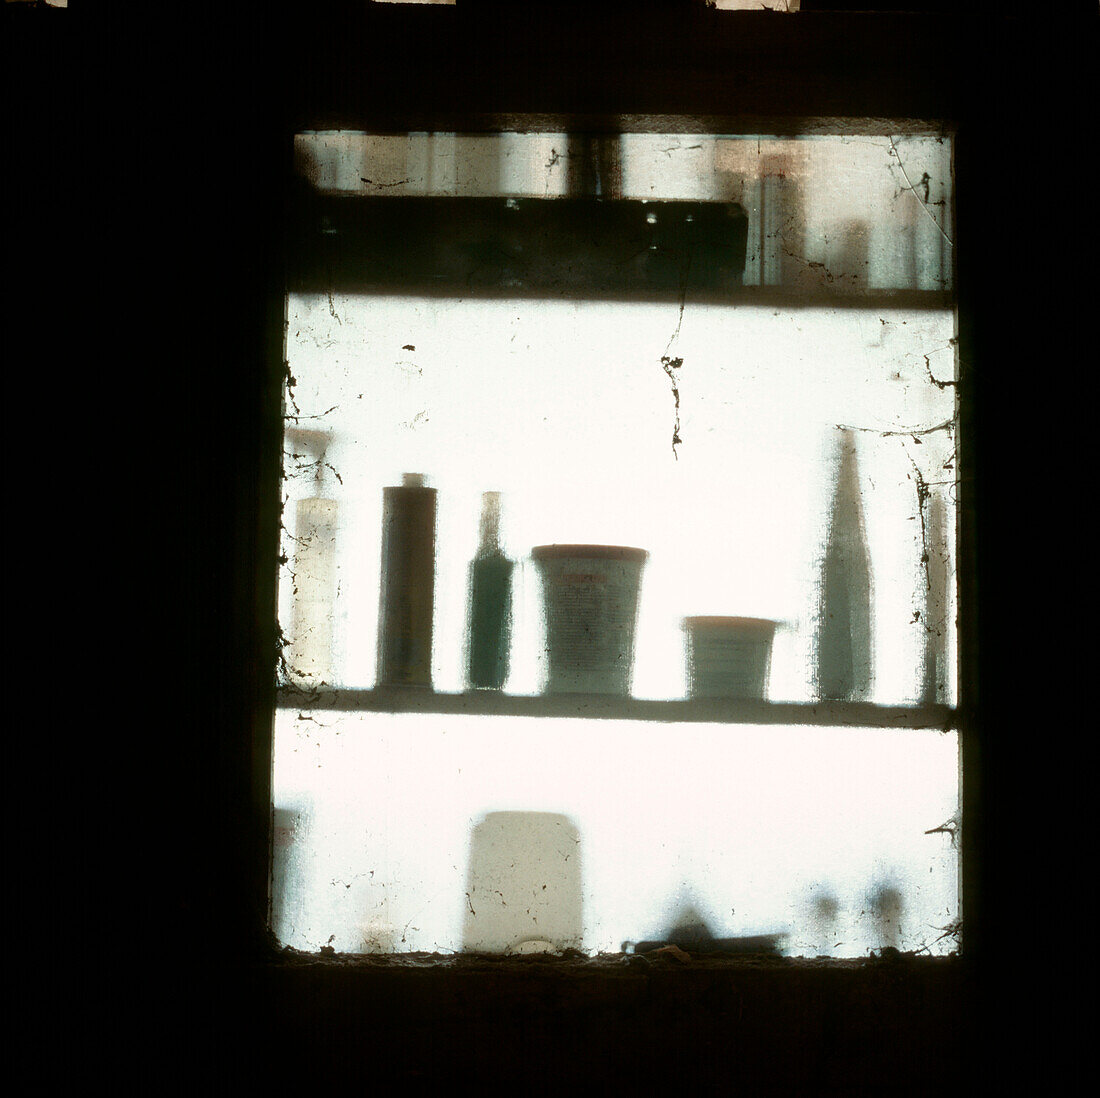 Blick aus dem Fenster eines Schuppens mit Schatten von Farbtöpfen und Heimwerkerprodukten auf Regalen